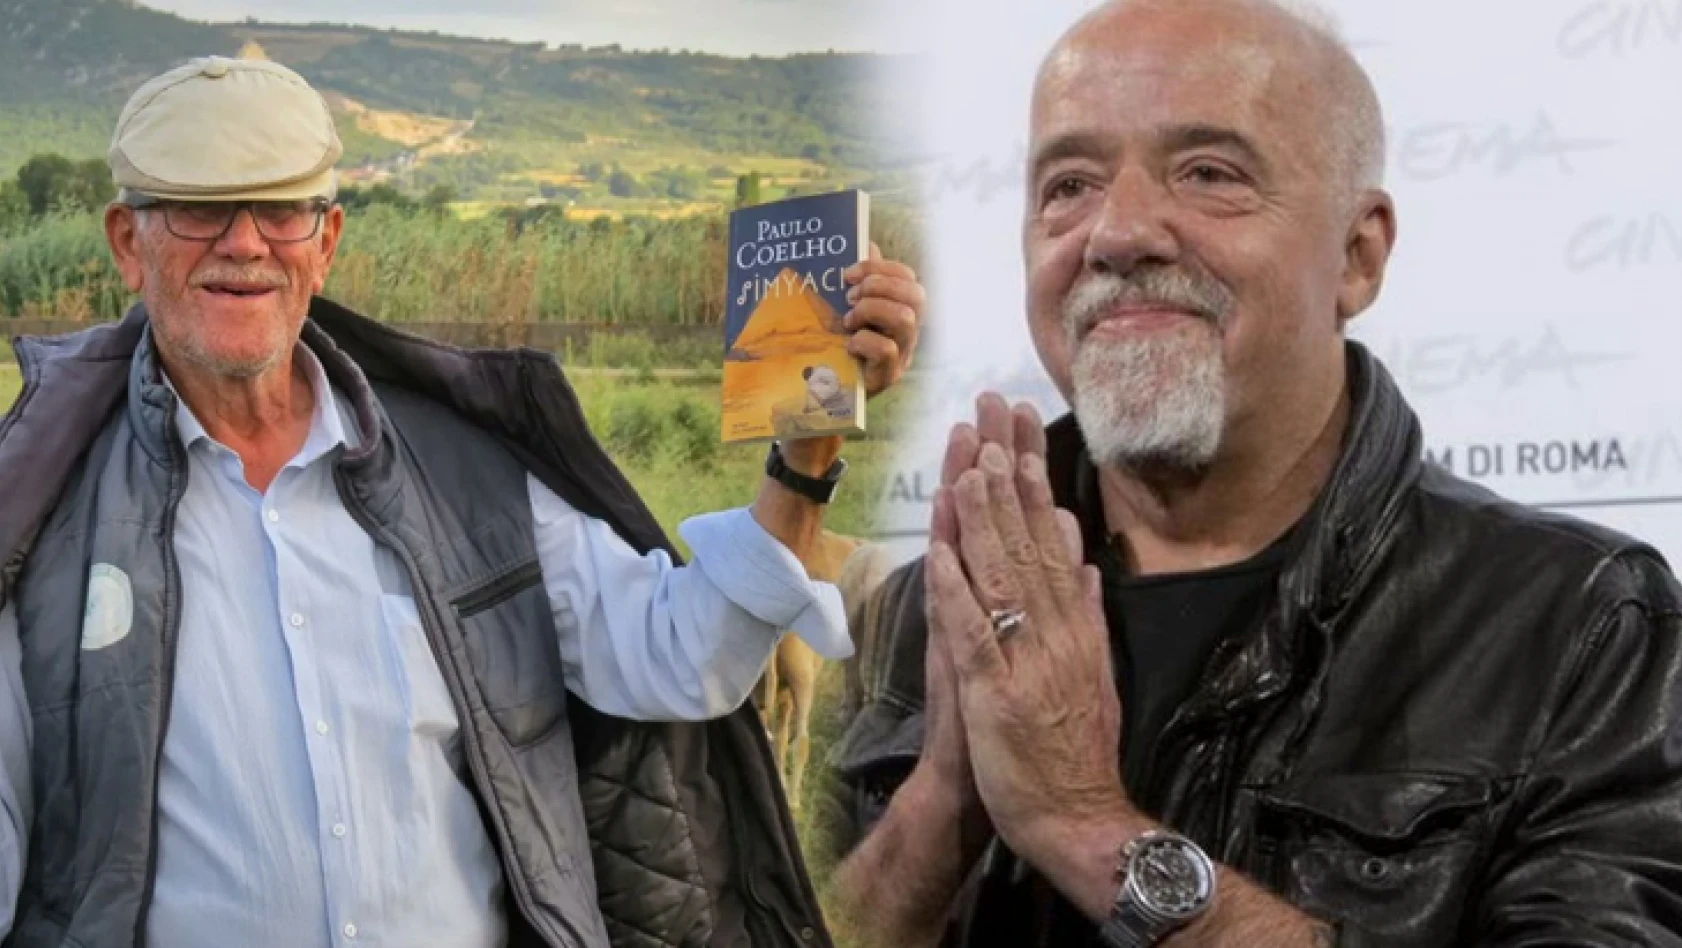 Dünyaca ünlü yazar Paulo Coelho'dan 'Türk çoban' paylaşımı